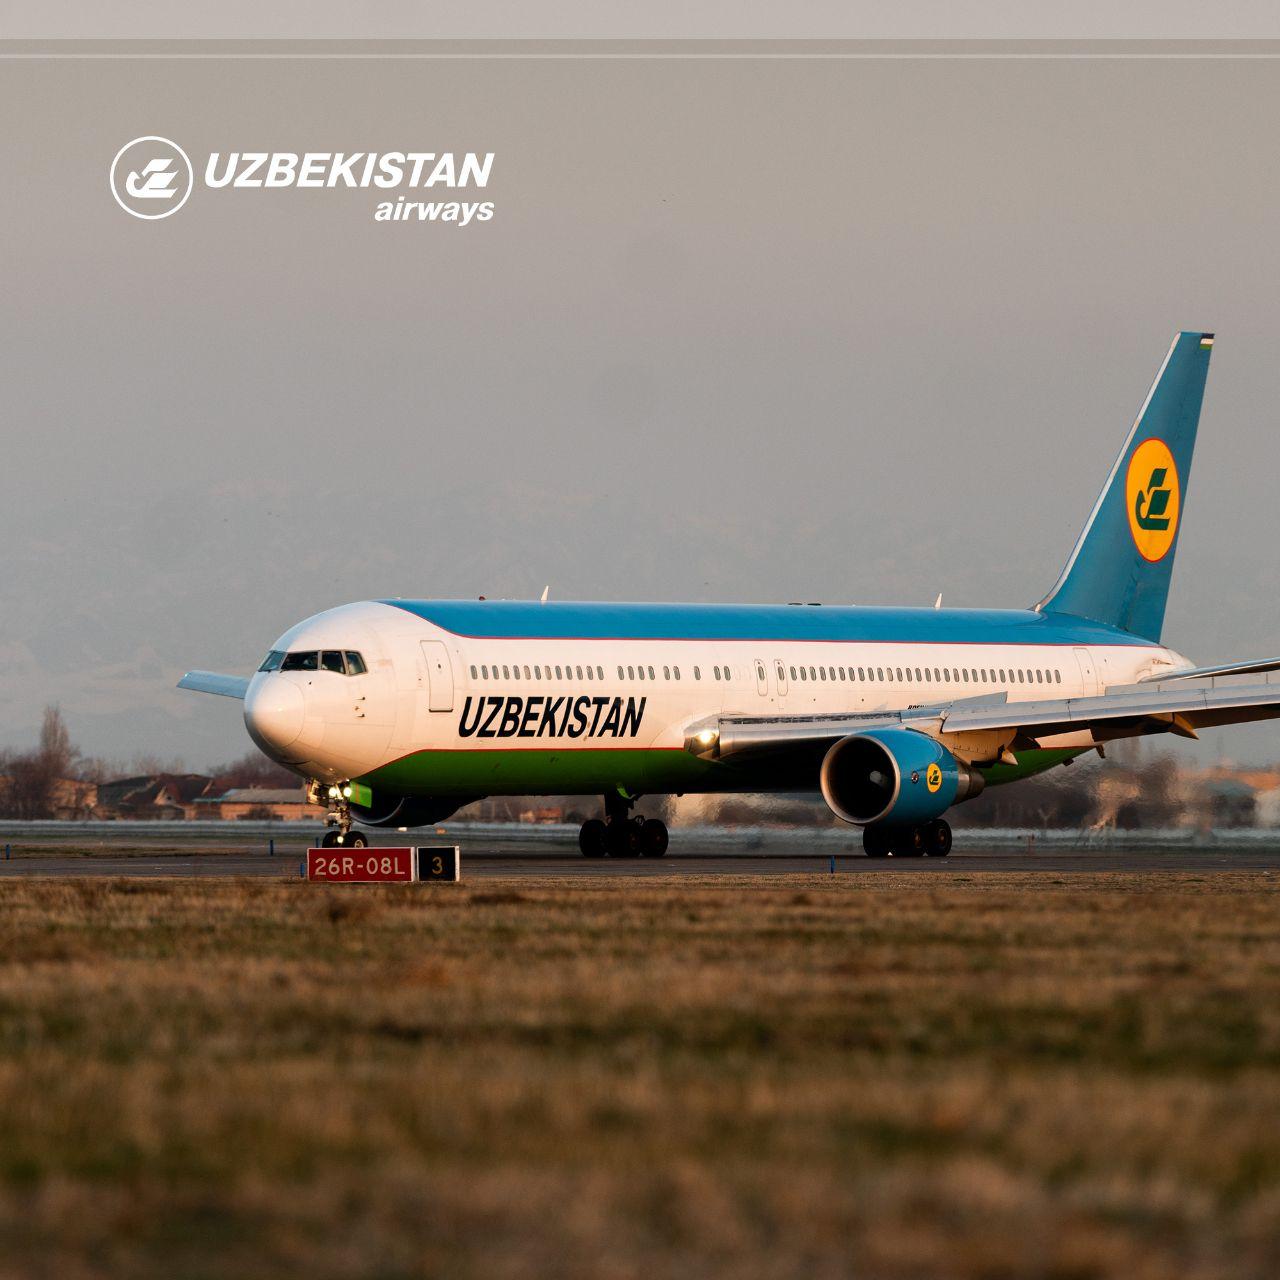 Сайт узбекистанских авиалиний. Узбекистан Airways. Самолет Узбекистан. Авиакомпания узбекские авиалинии. Самолет UZAIRWAYS.